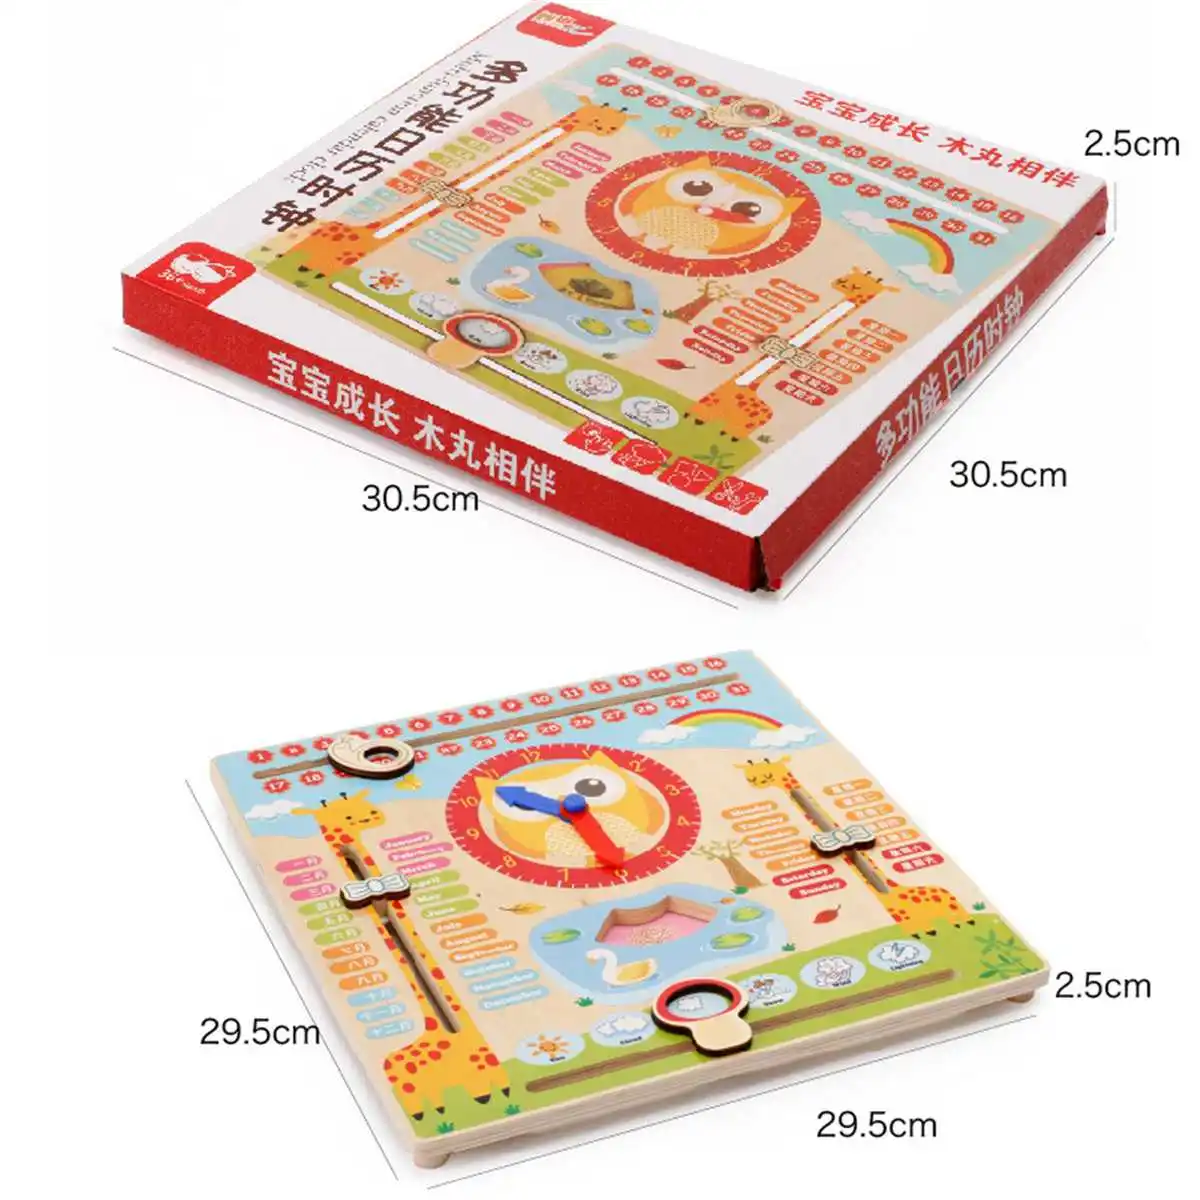 Деревянный Календарь игрушки многофункциональные детские часы Дата погода диаграмма познание раннего обучения игрушка для детского